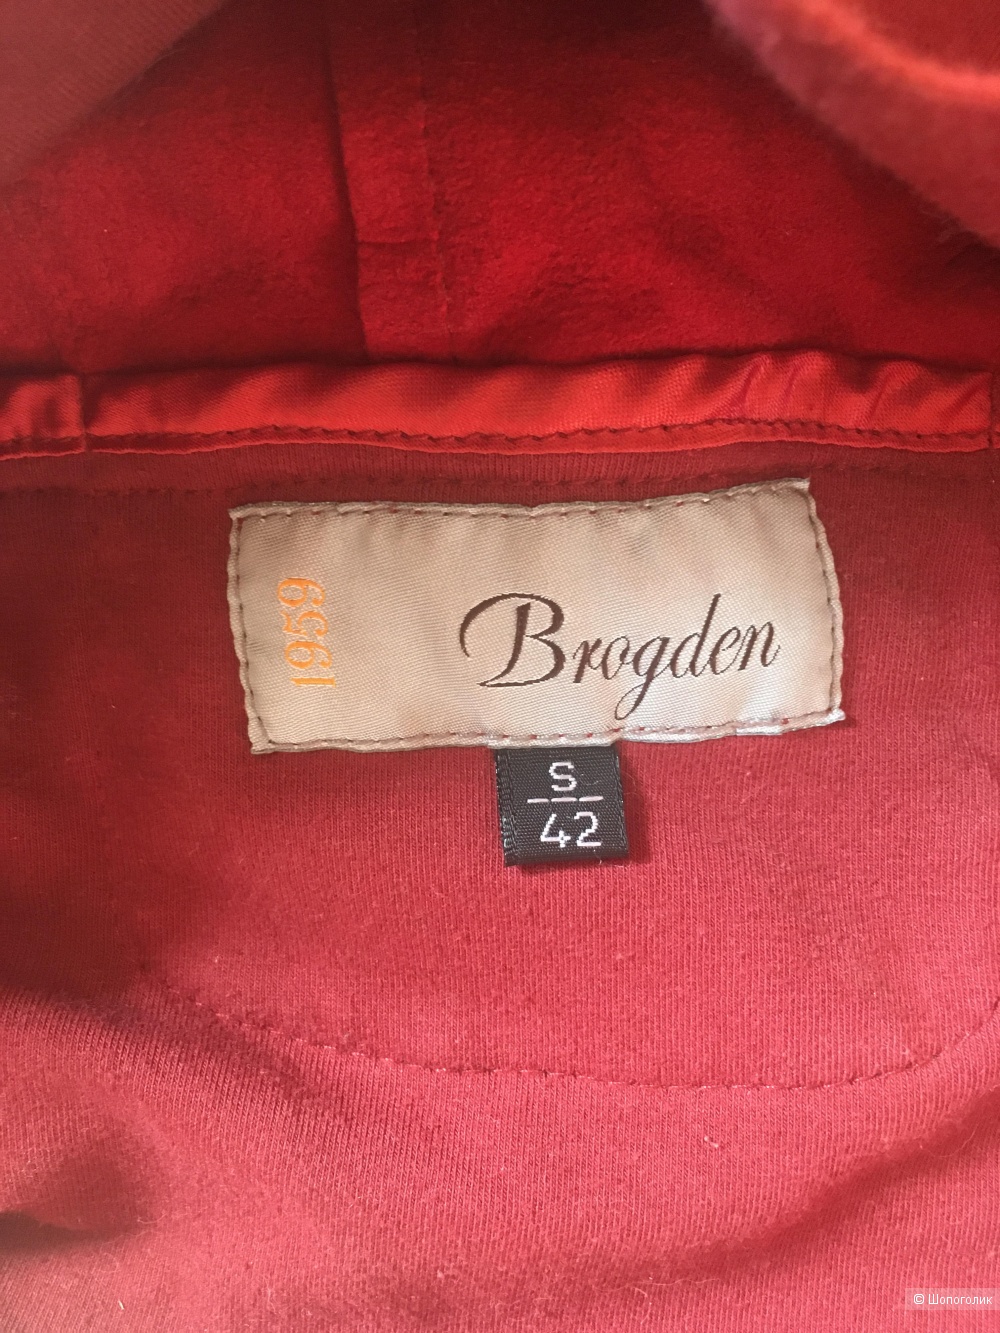 Кожаный кардиган куртка Brogden размер S